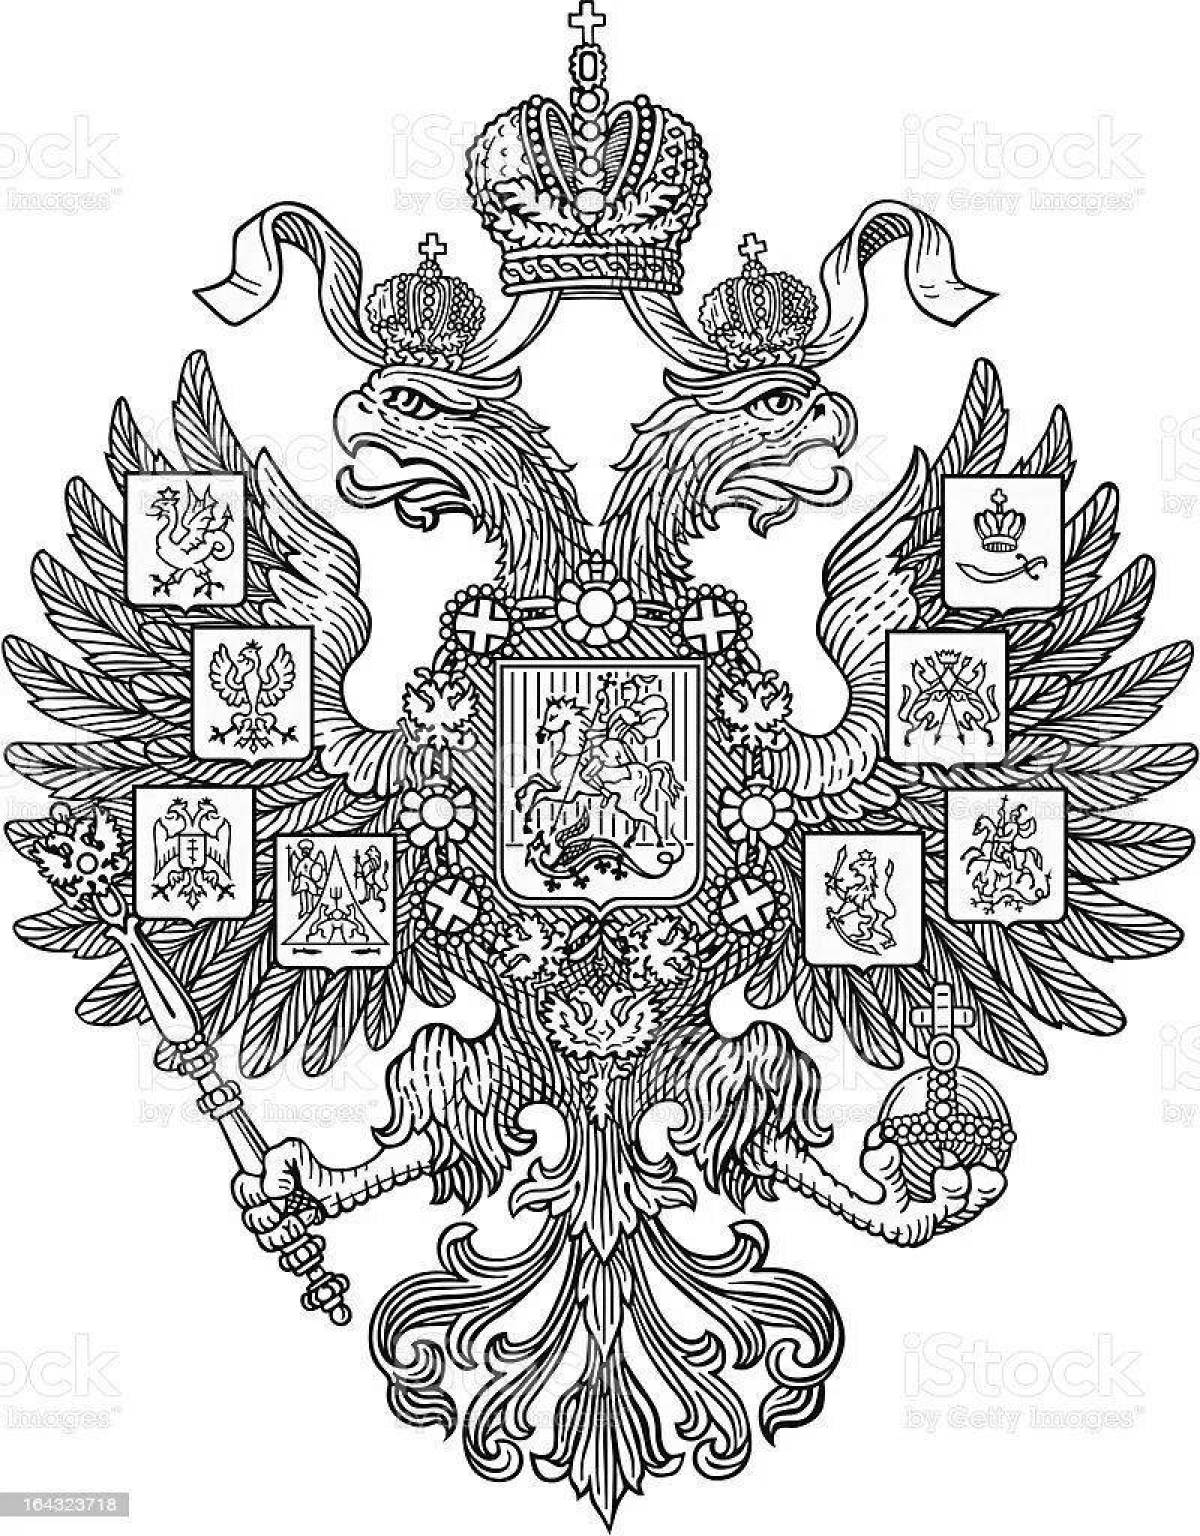 Богато украшенная раскраска российской империи